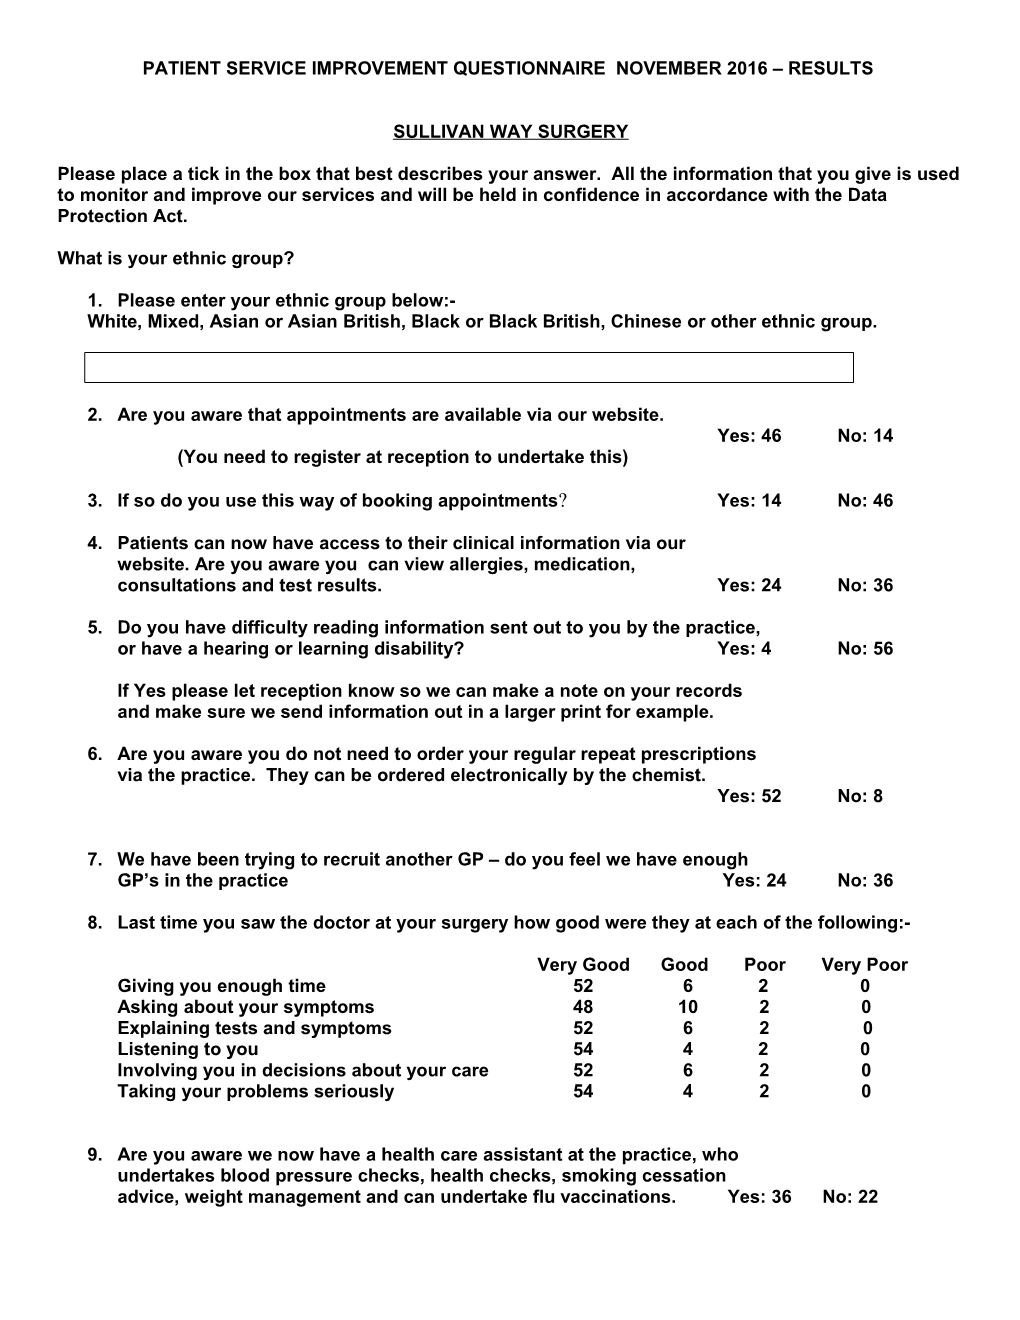 Patient Service Improvement Questionnaire Results 2011